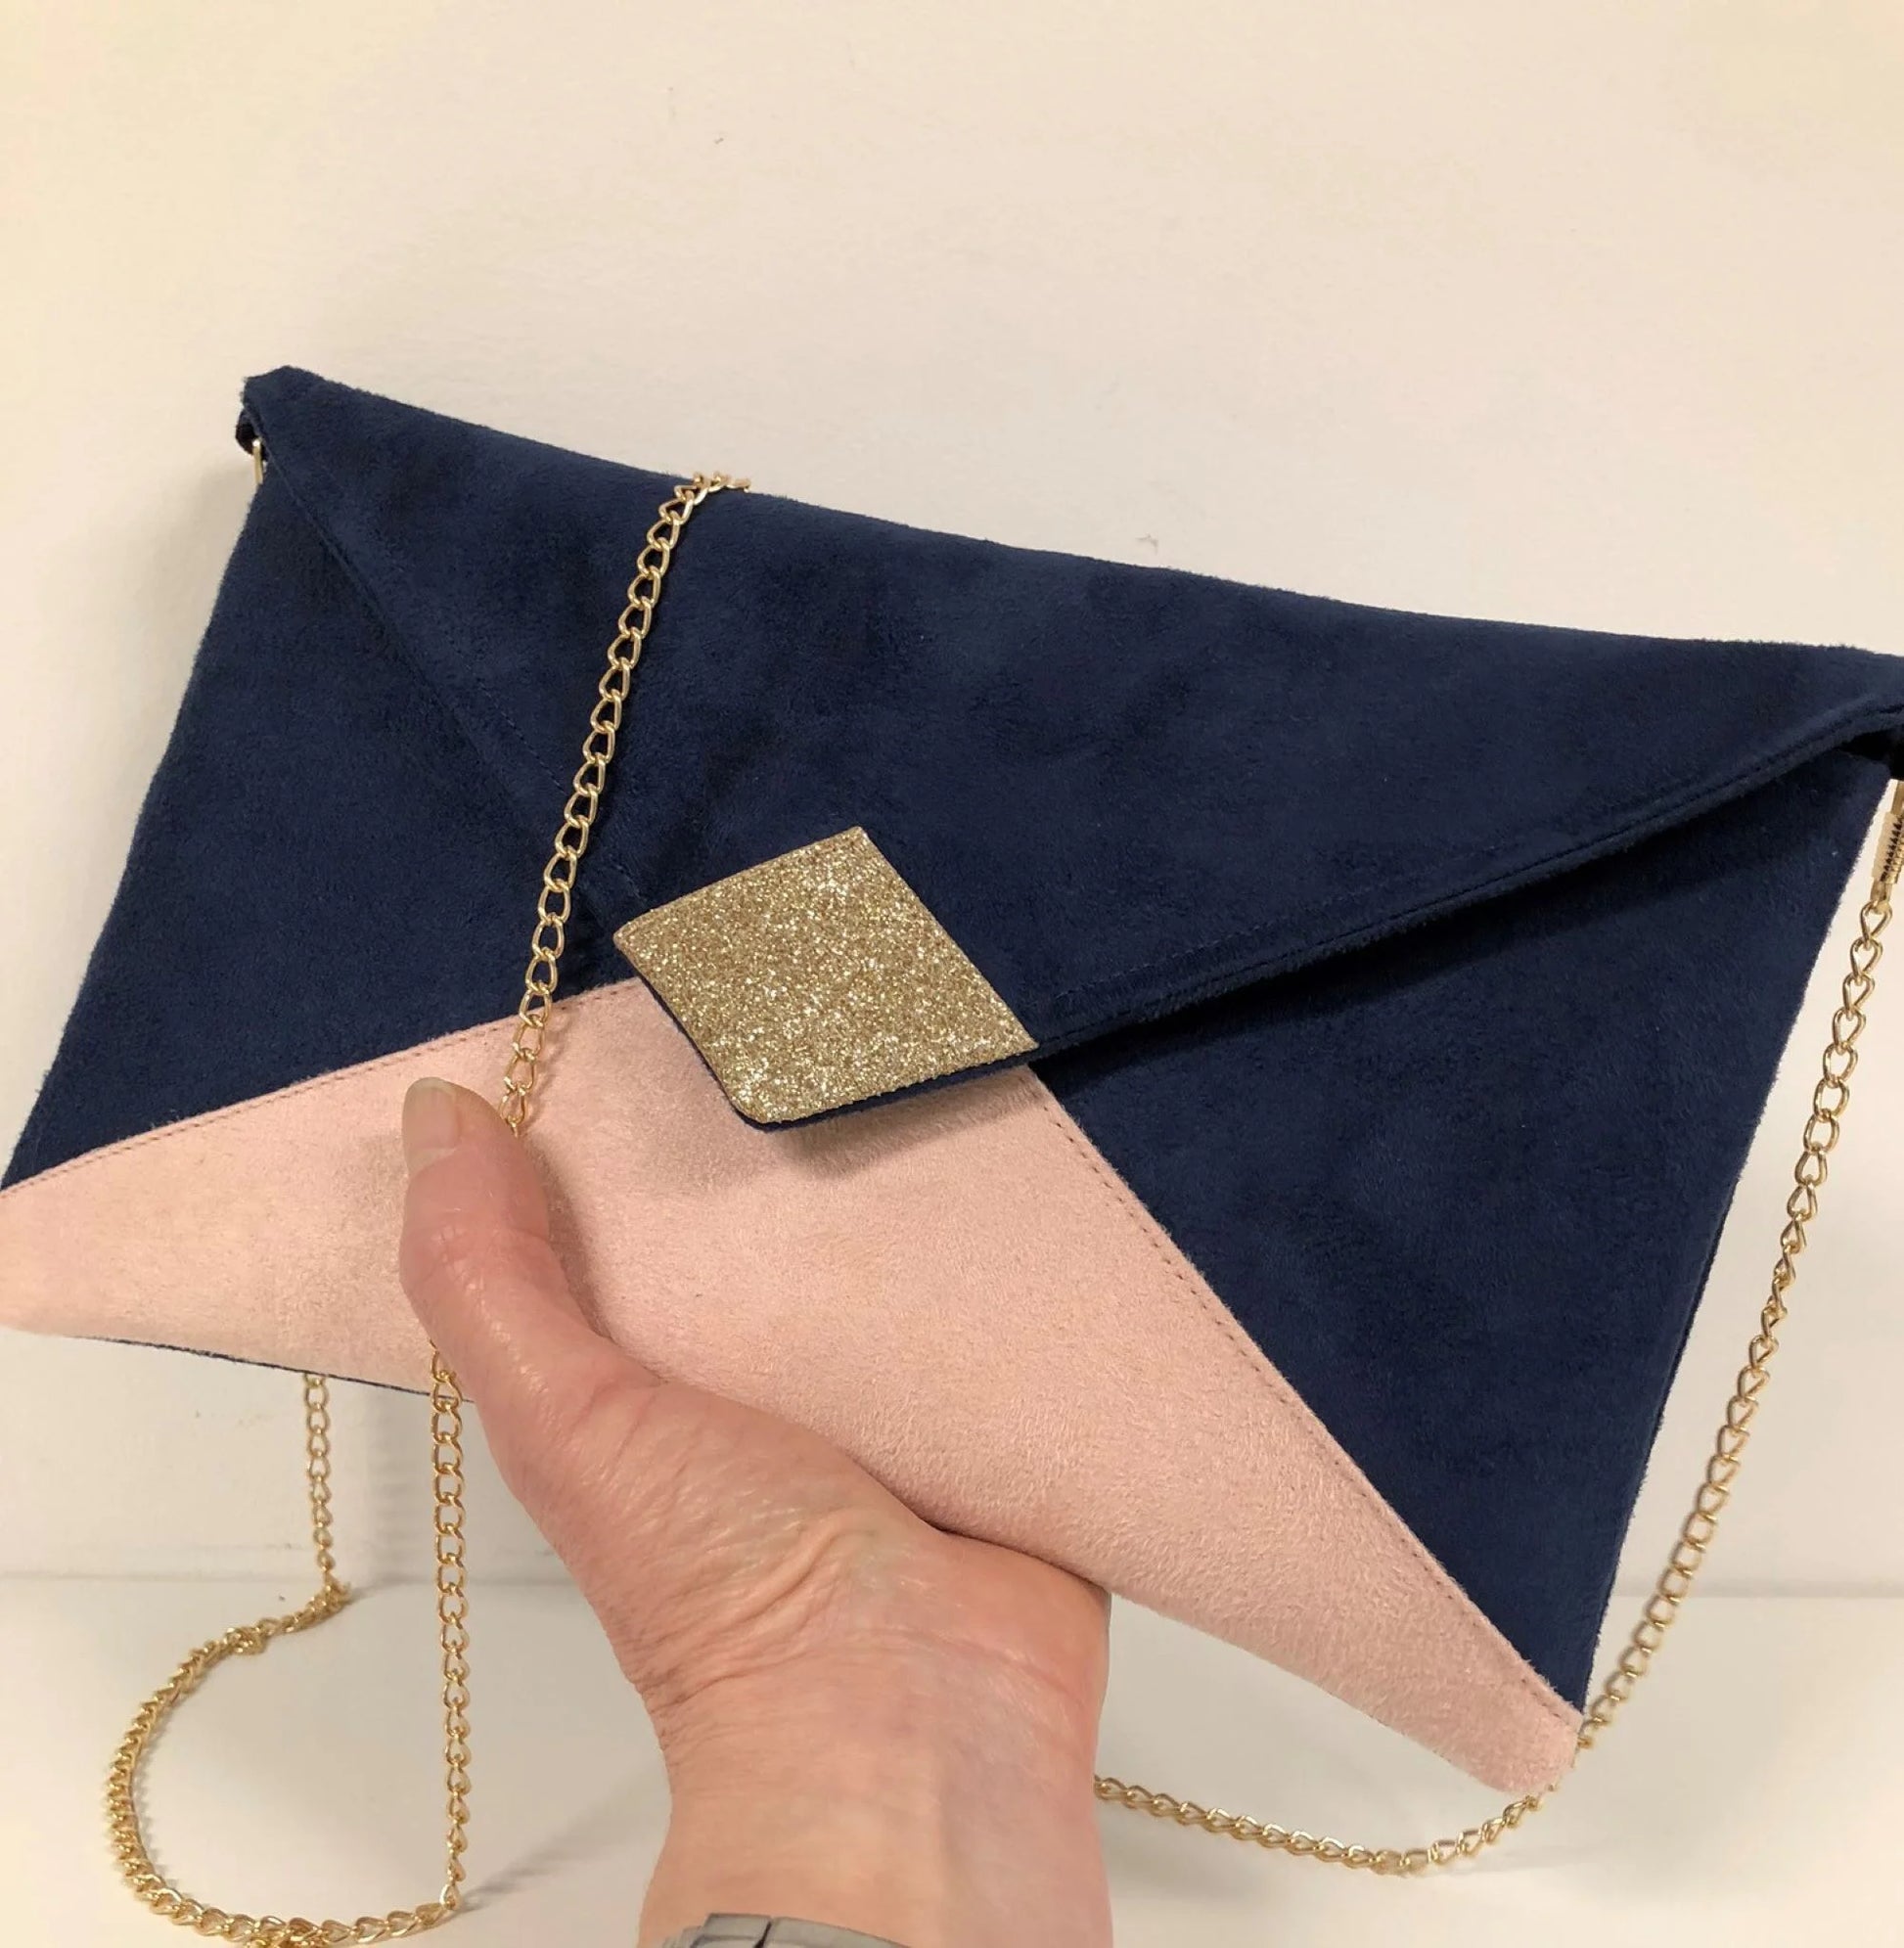 Le sac pochette Isa bleu marine et rose poudré à paillettes dorées, avec chainette amovible, tenu en main.